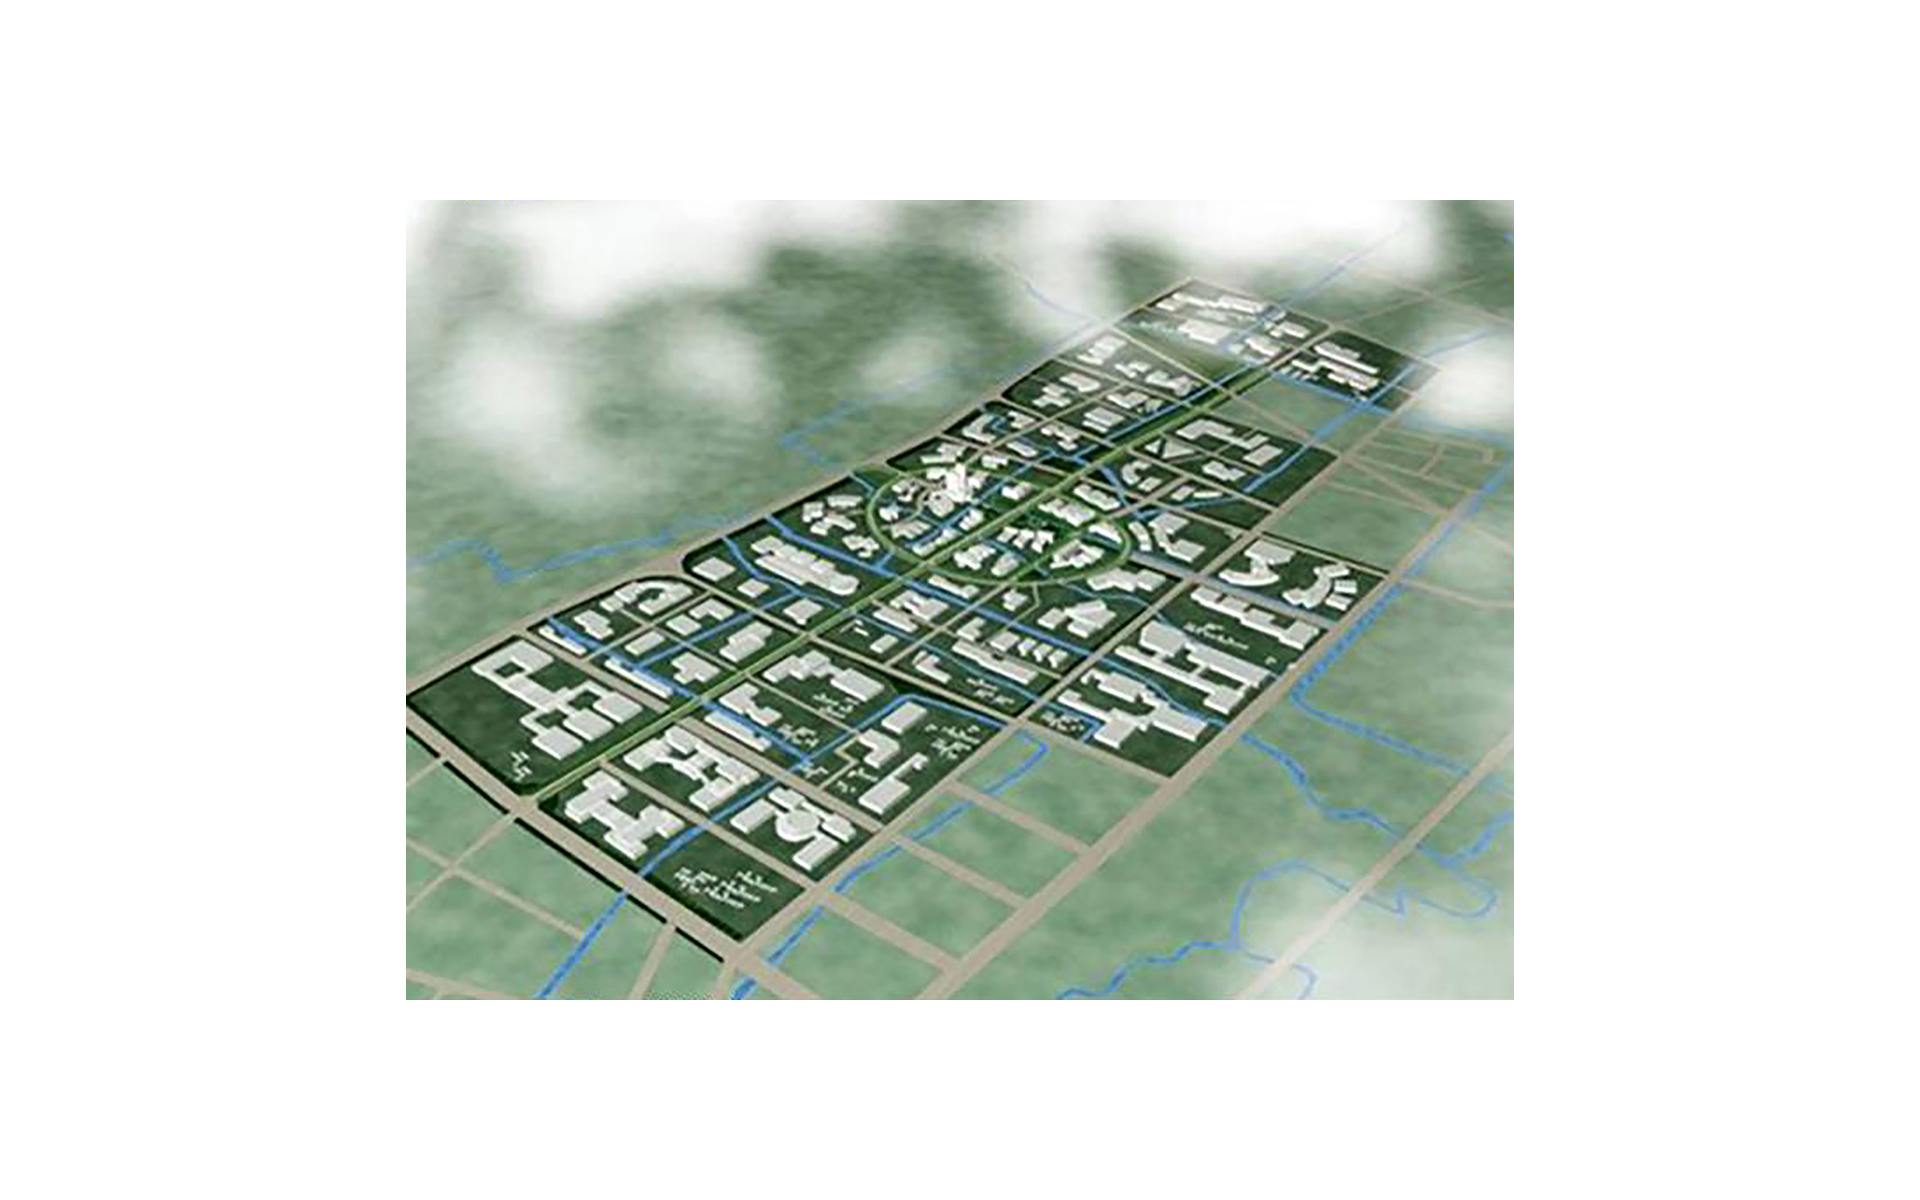 Minbei industrial areaMaster Plan, Shanghai China